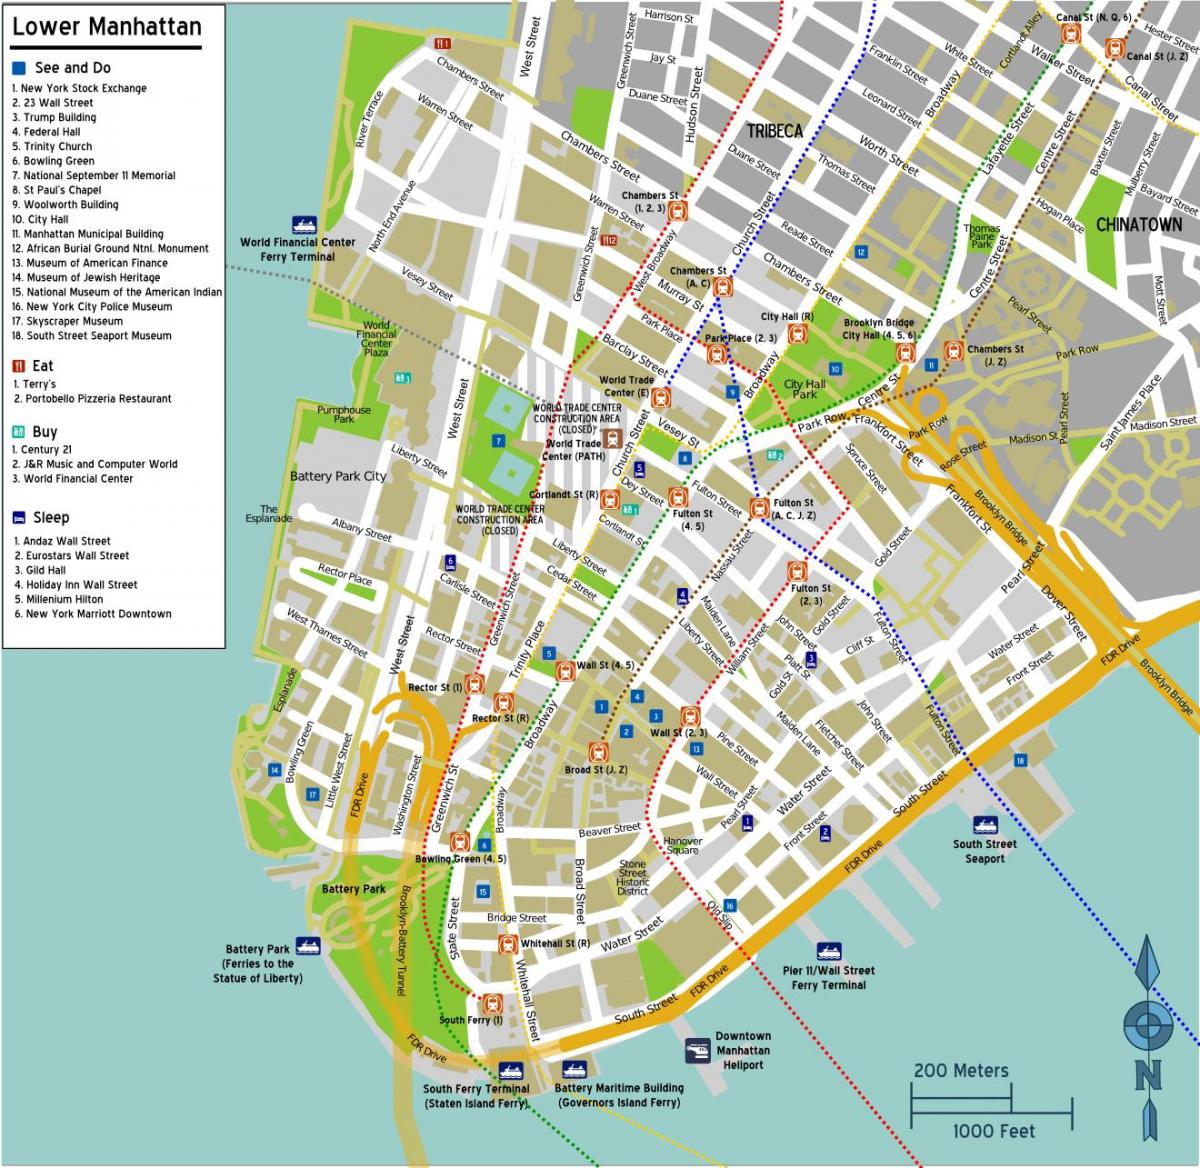 mapa del bajo Manhattan con los nombres de las calles